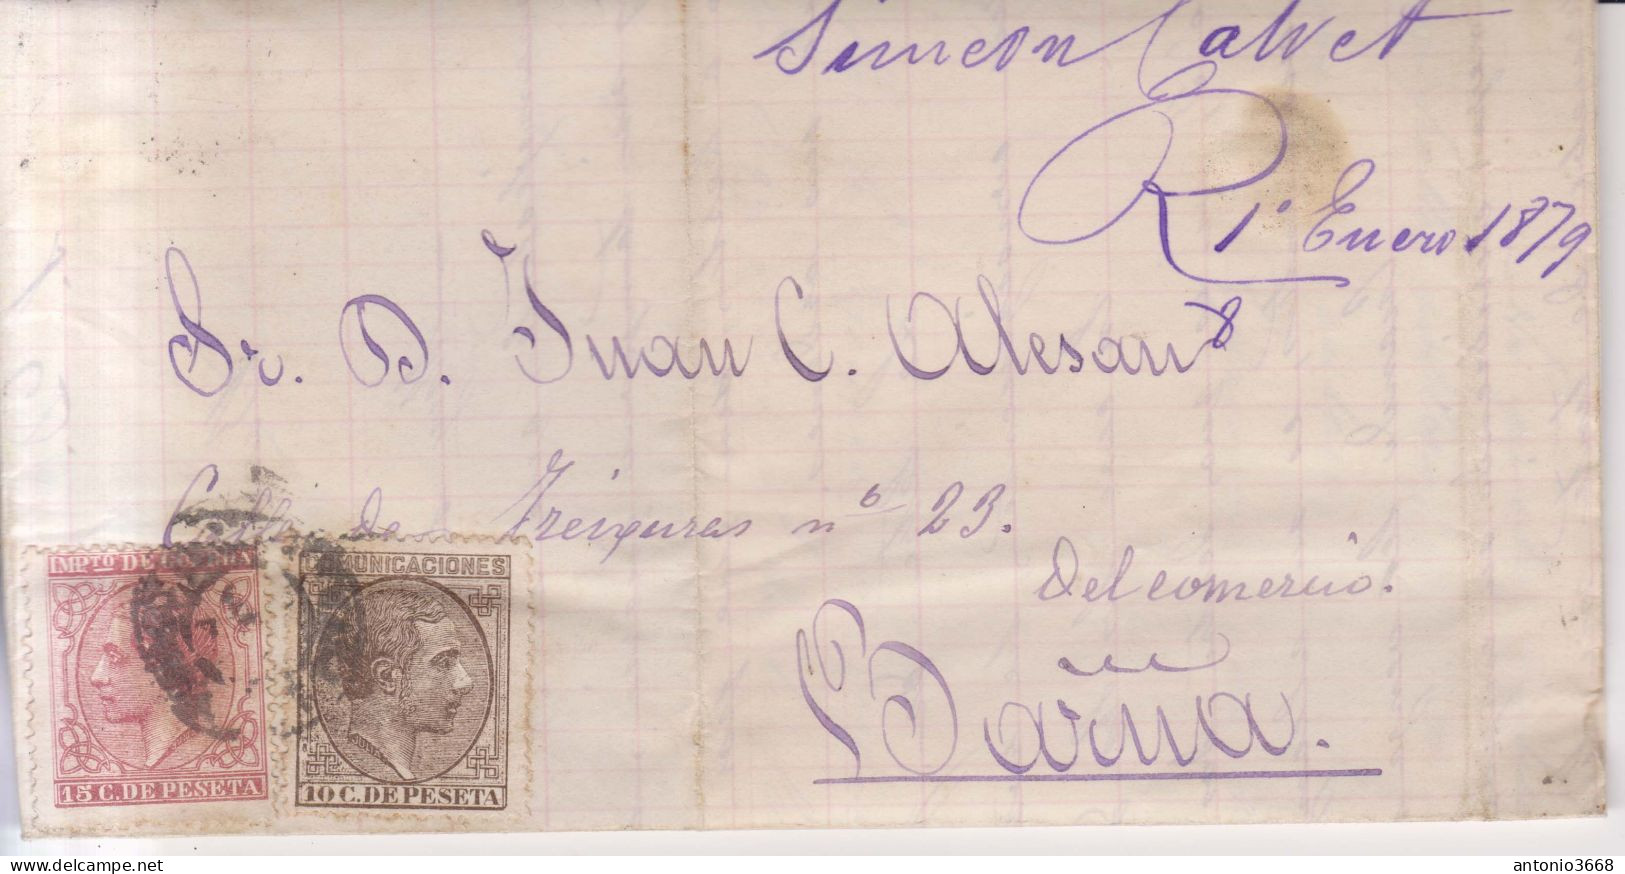 Año 1878 Edifil 192-188 Alfonso XII Carta Matasellos Valls Tarragona Simon Calvet - Storia Postale